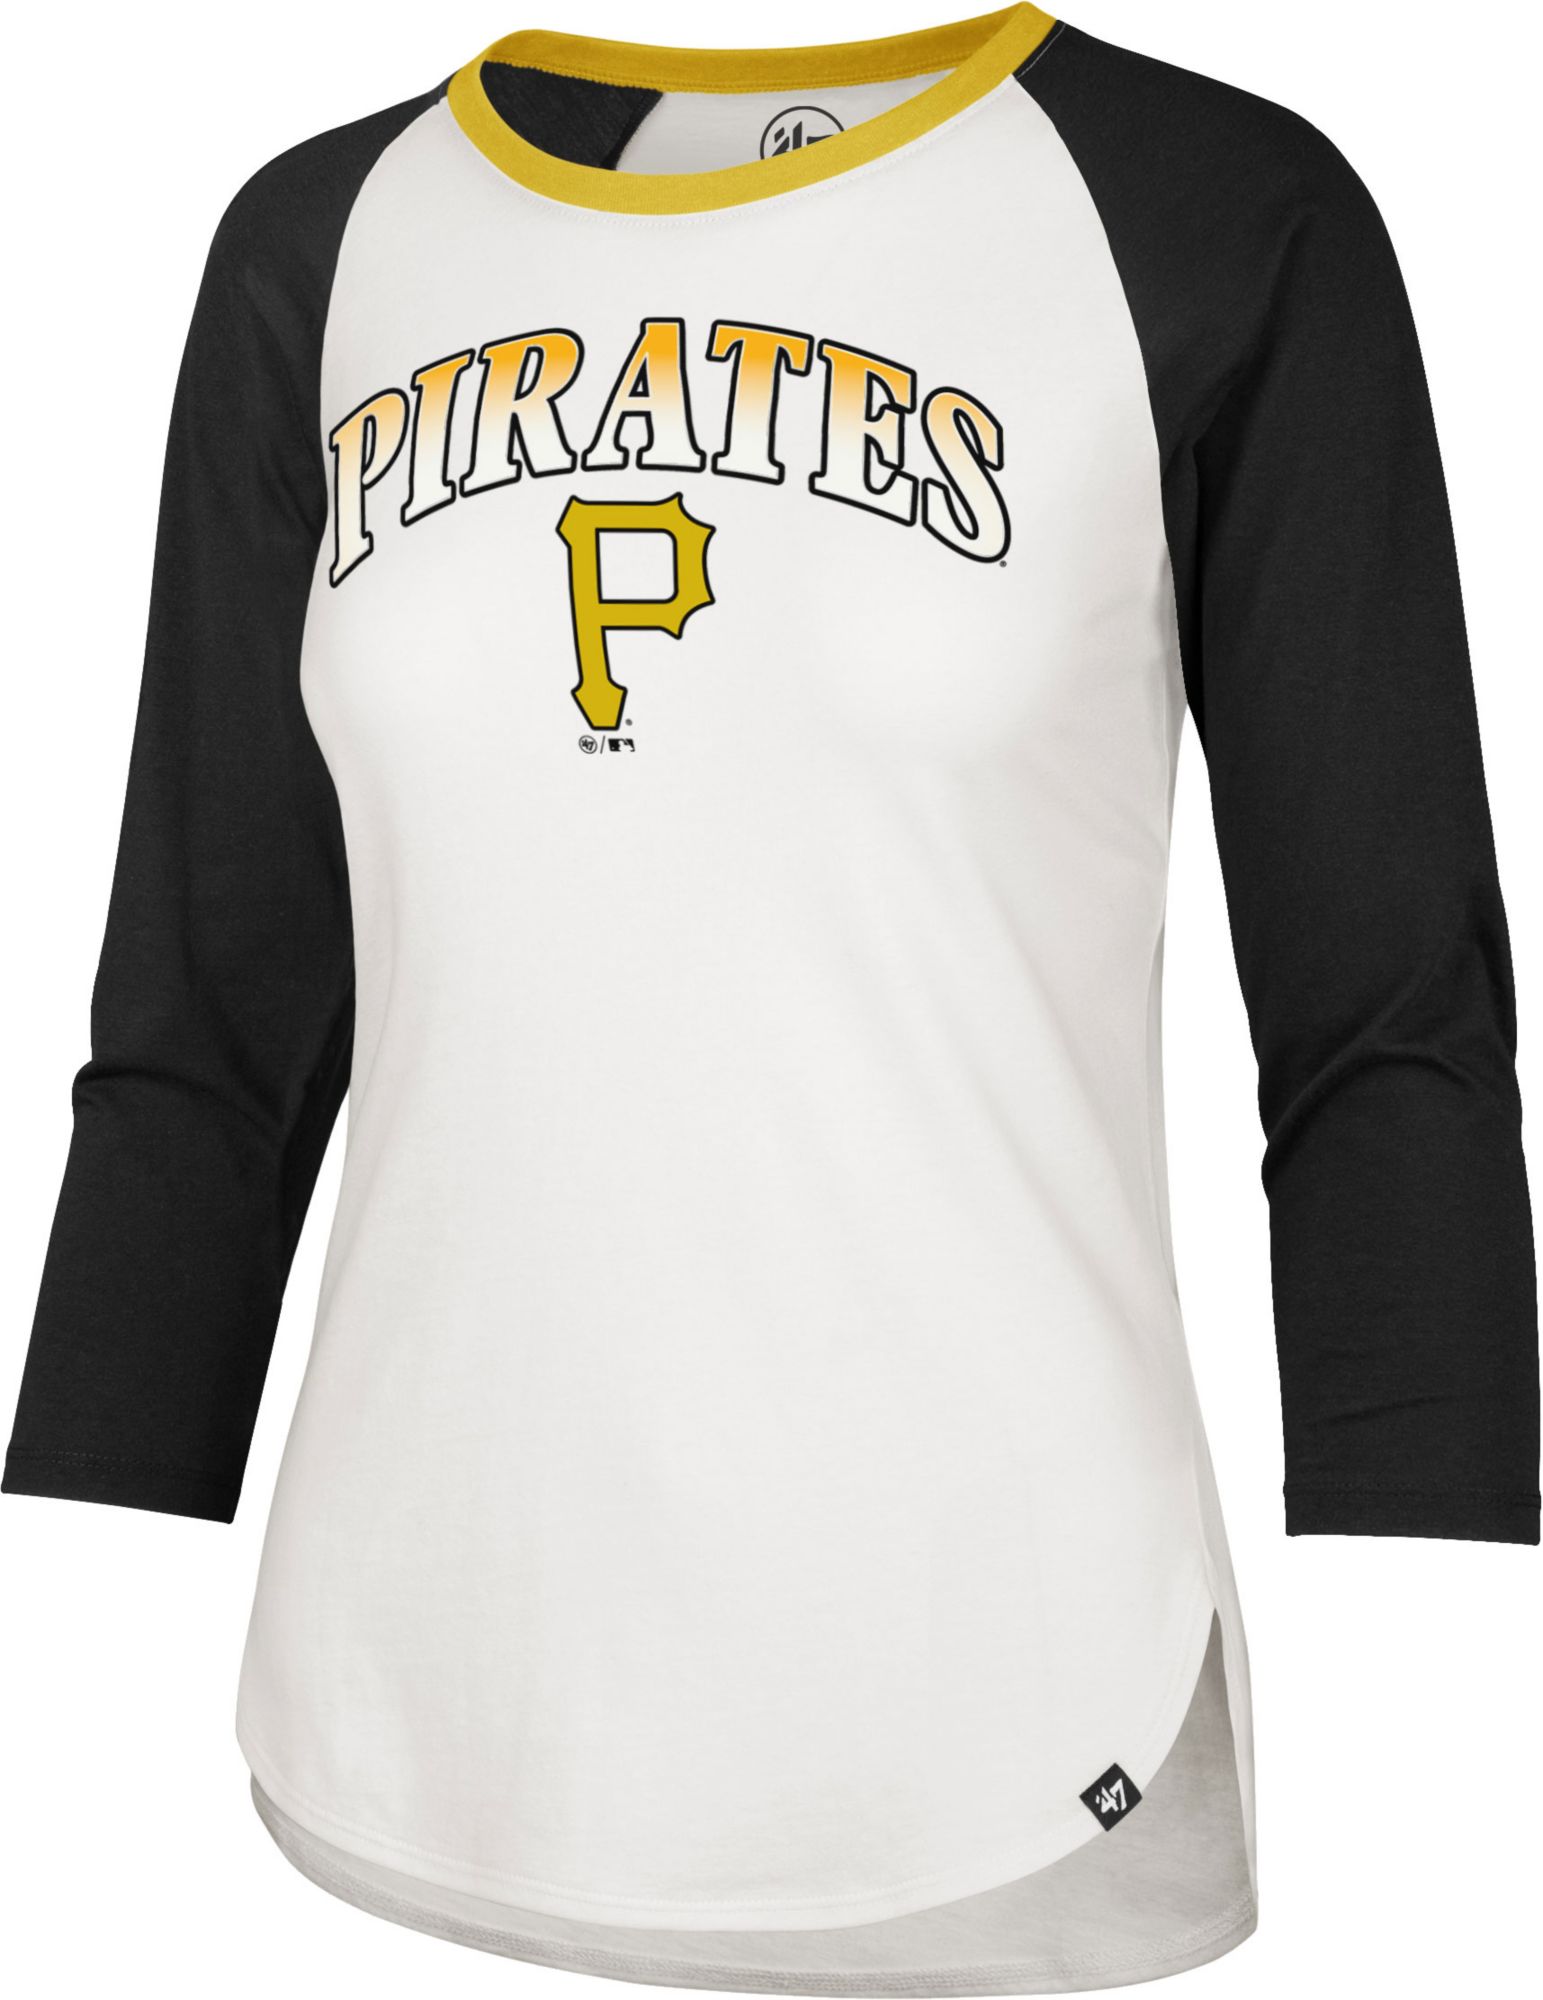 womens pirates baseball shirts